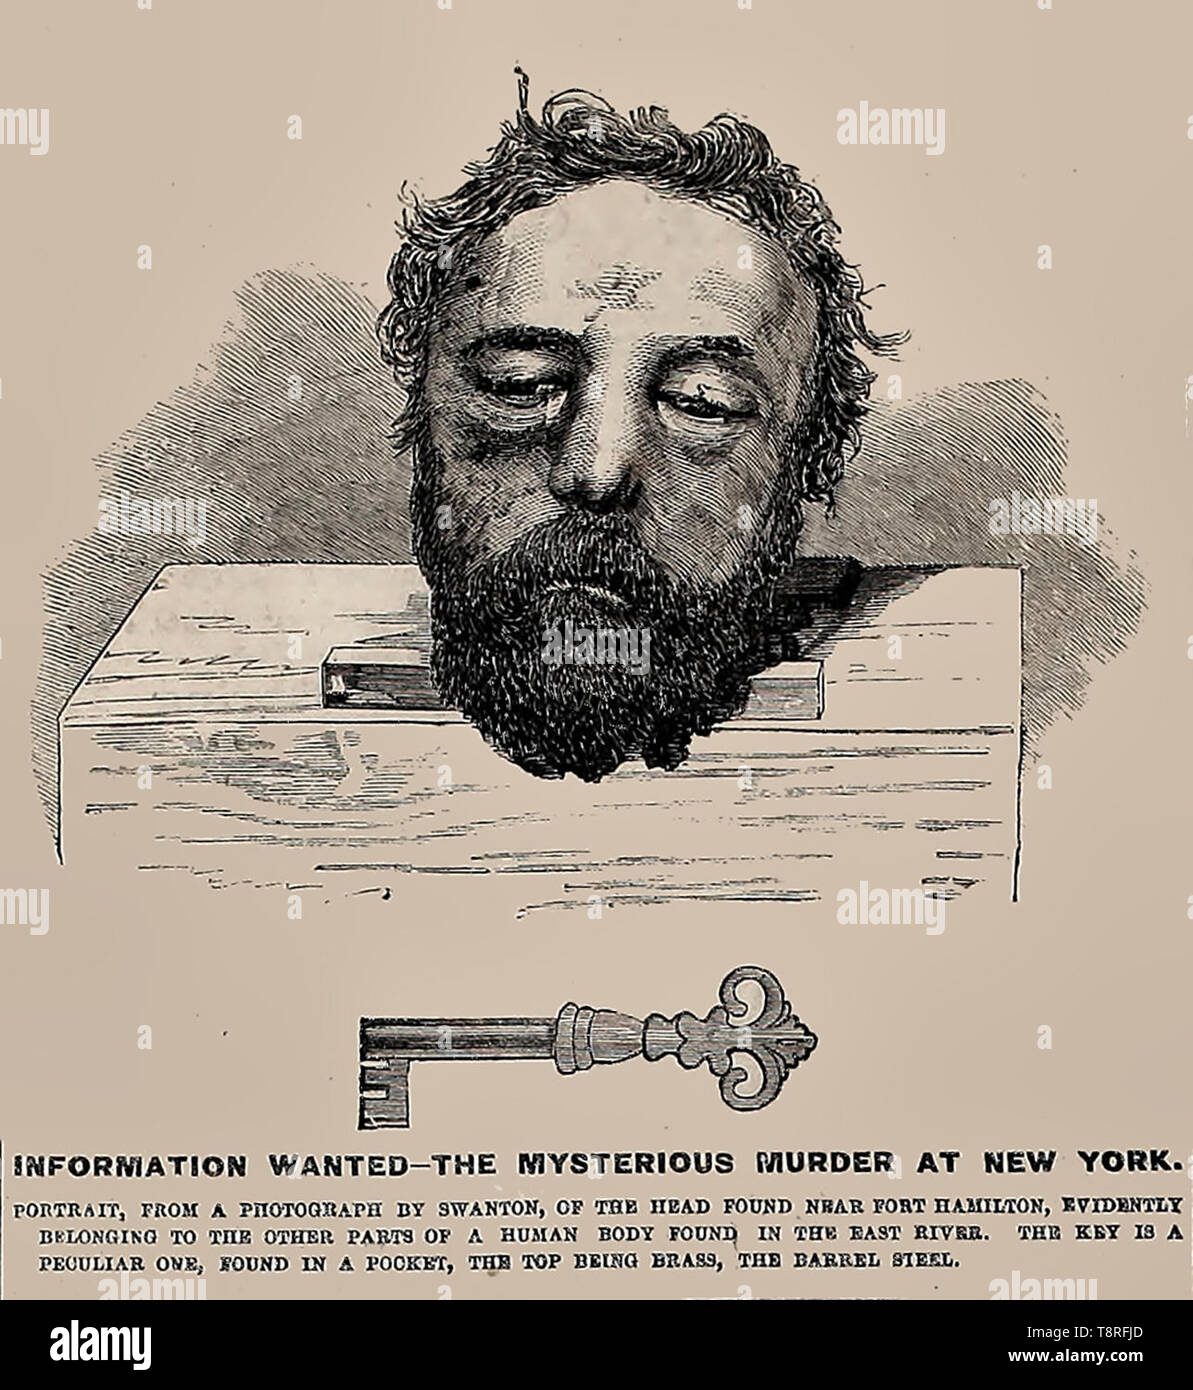 Informazioni voluto annuncio a New York nel 1864 - Il misterioso omicidio a New York - Testa trovato vicino a Fort Hamilton, evidentemente appartenenti ad altre parti di un corpo umano trovato nell'East River, con una inusuale chiave di ottone Foto Stock